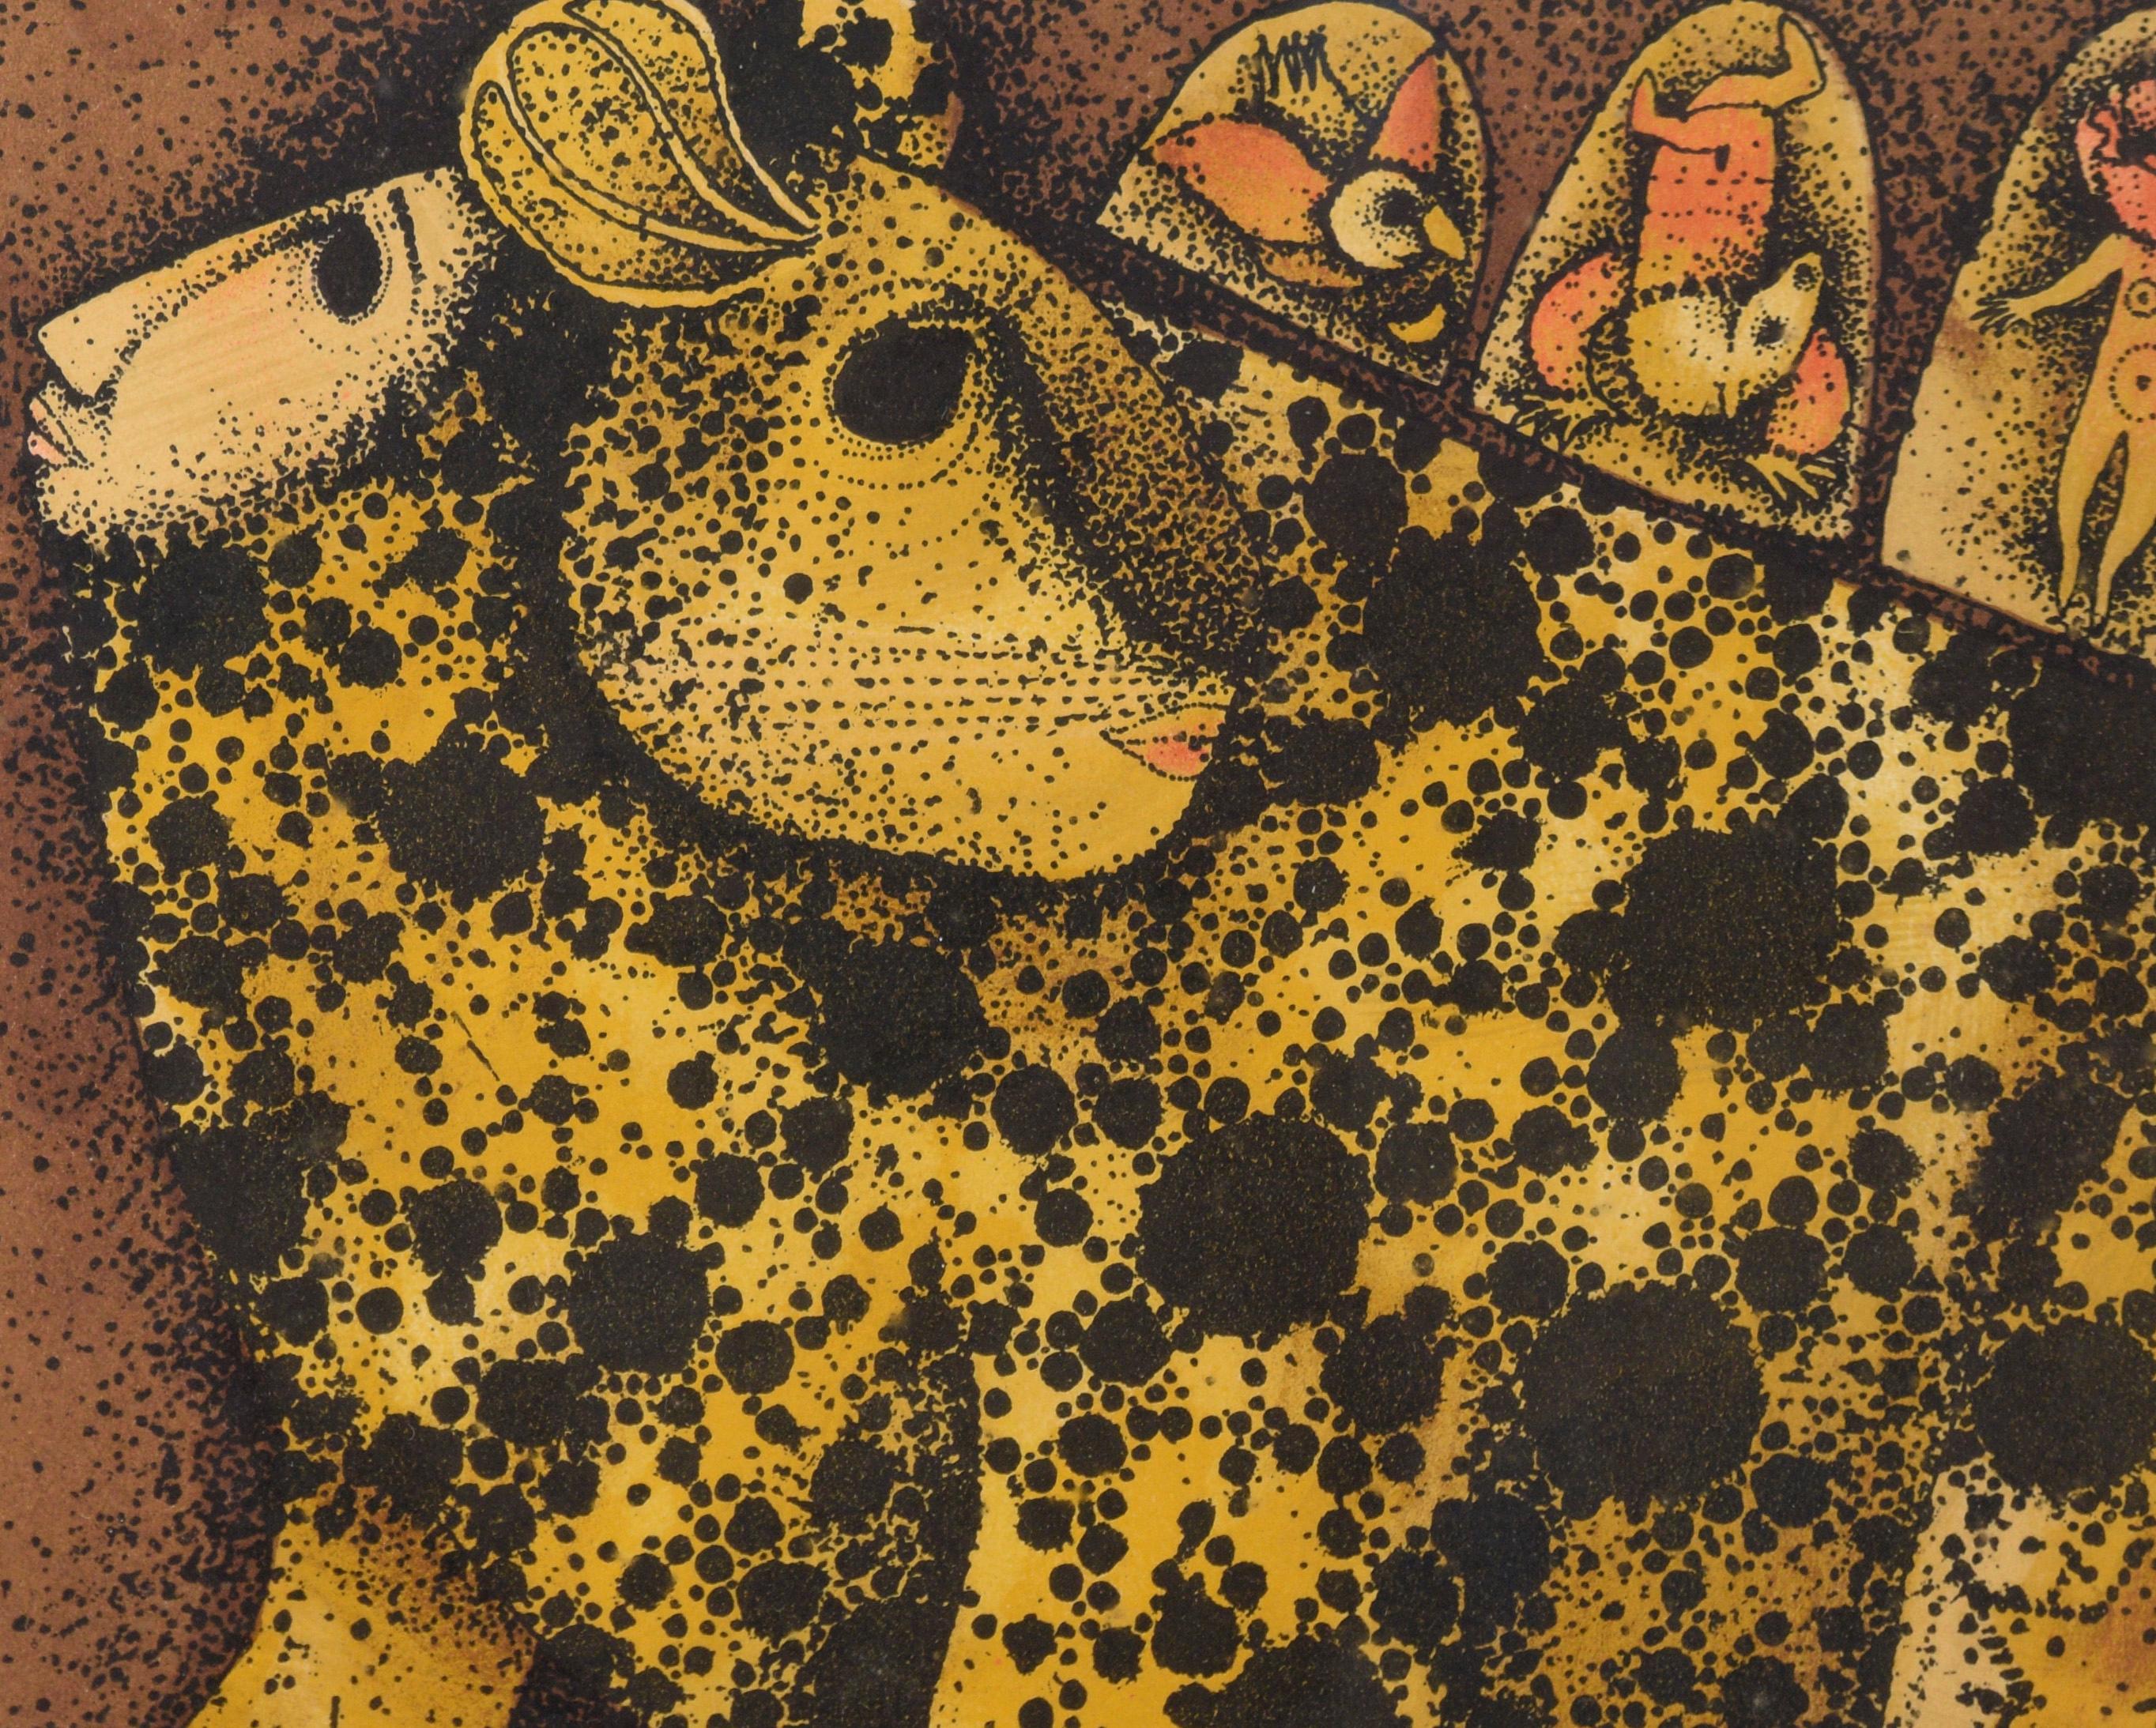 « Leopard Dreaming » - Lithographie fantastique à l'encre sur papier - Moderne Print par Carol Jablonsky